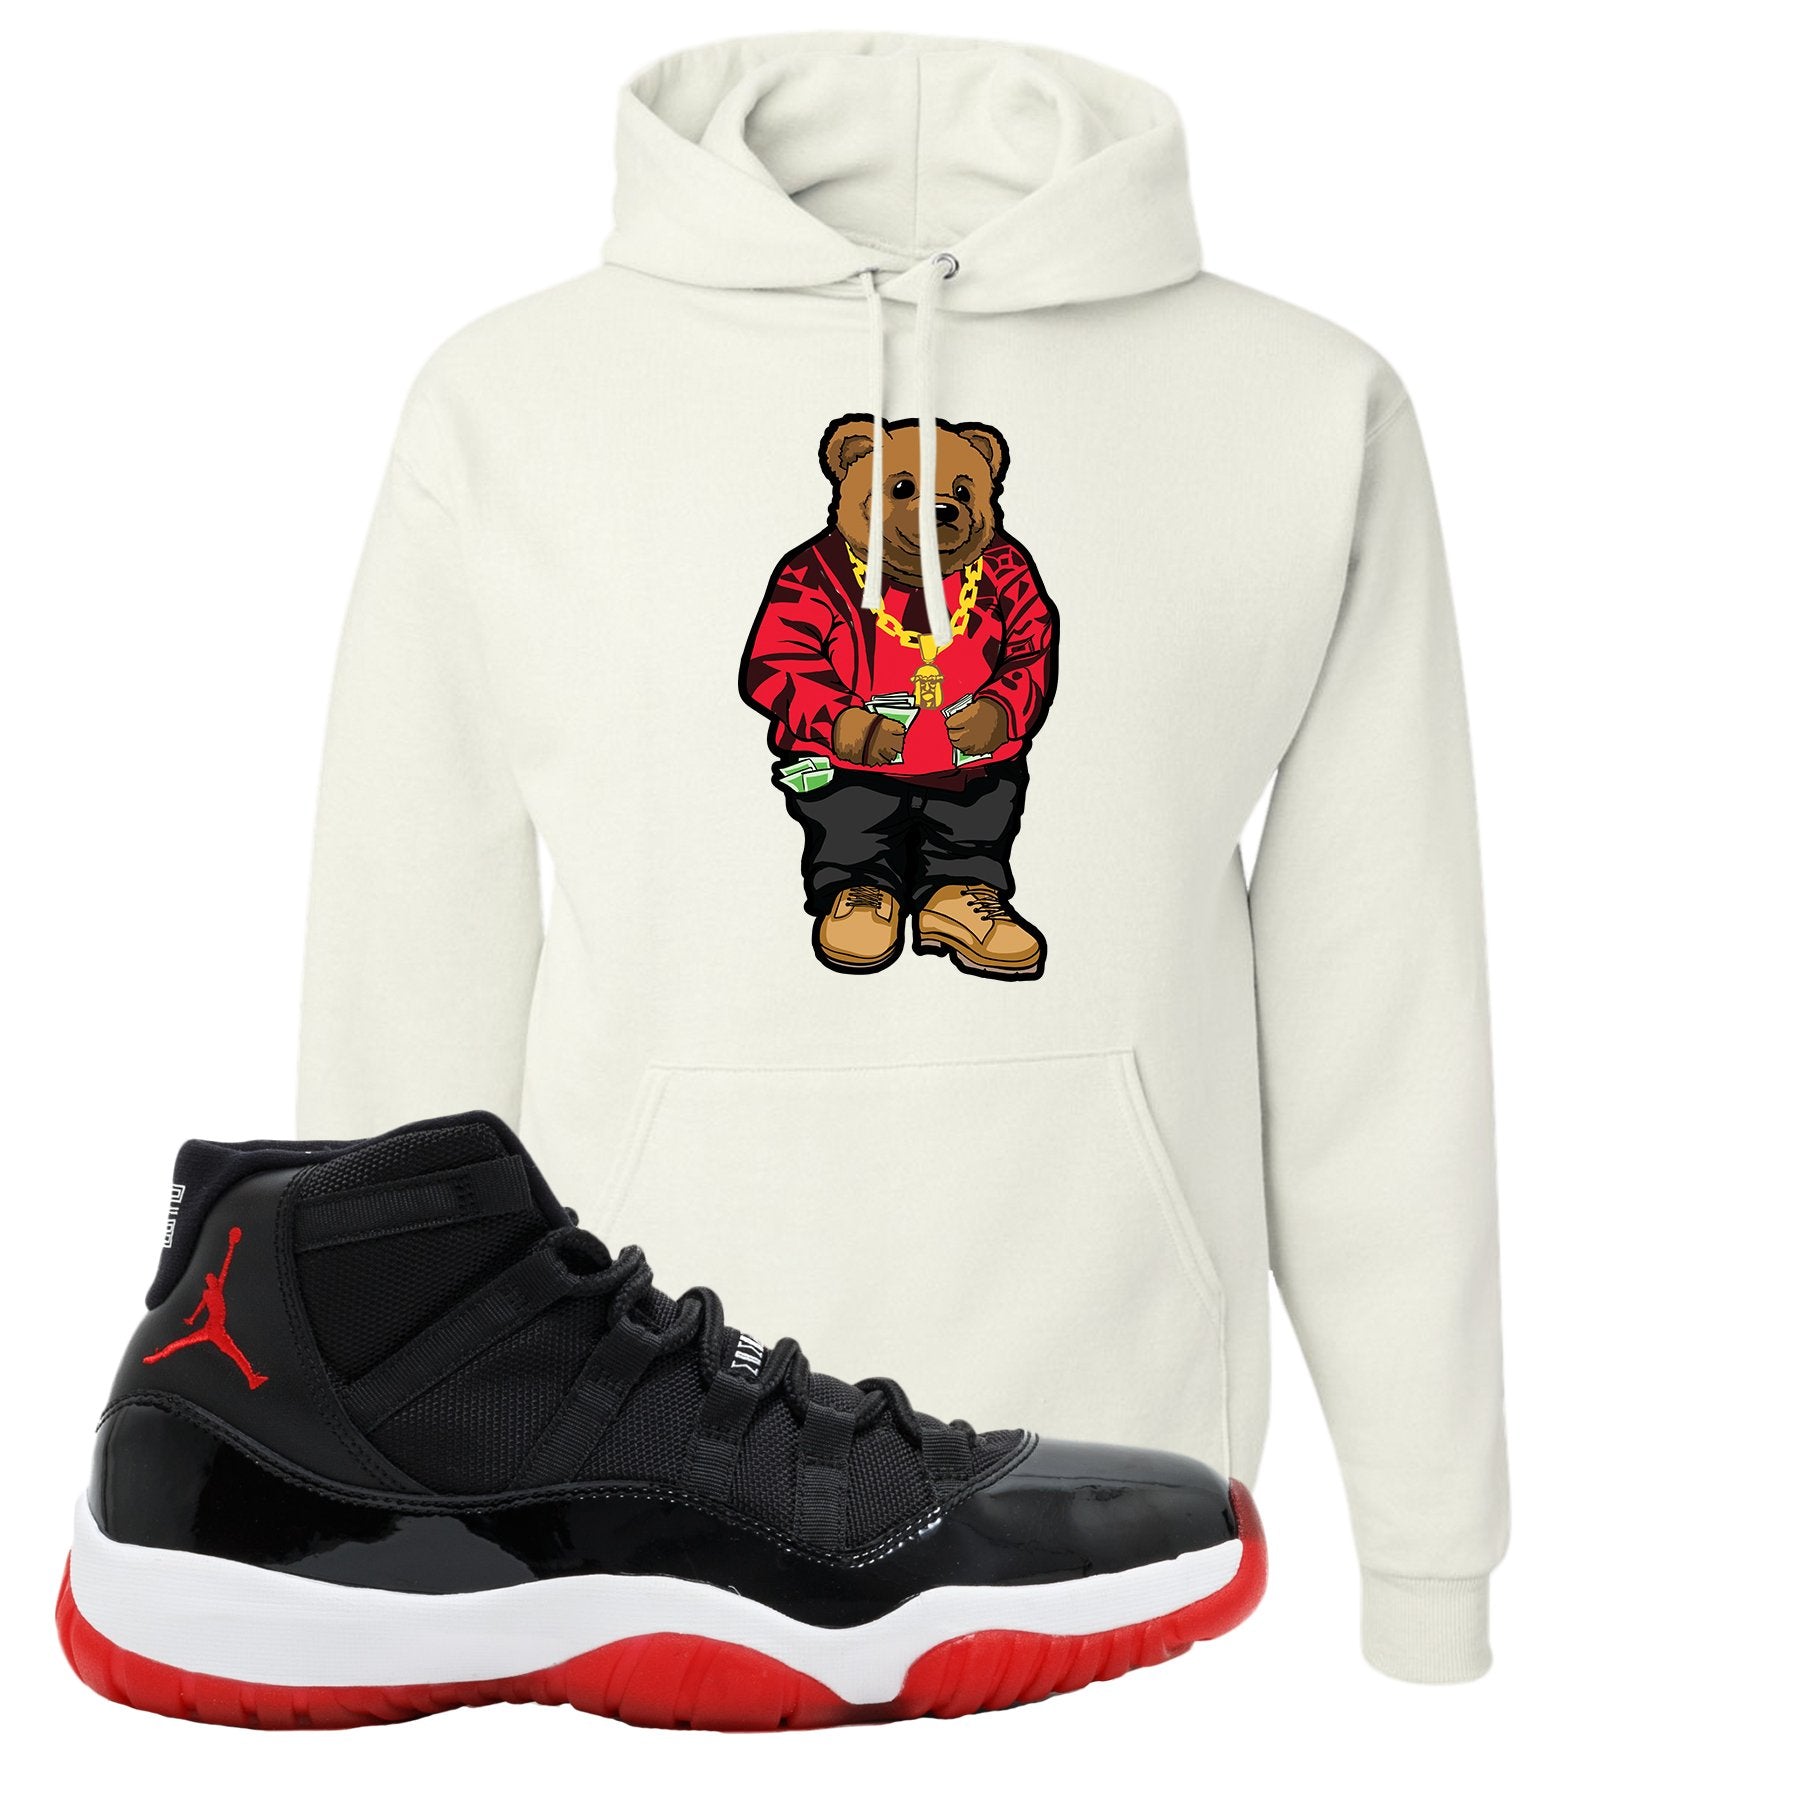 Jordan 11 Bred Sweater Bear White Sneaker Hook Up Pullover Hoodie